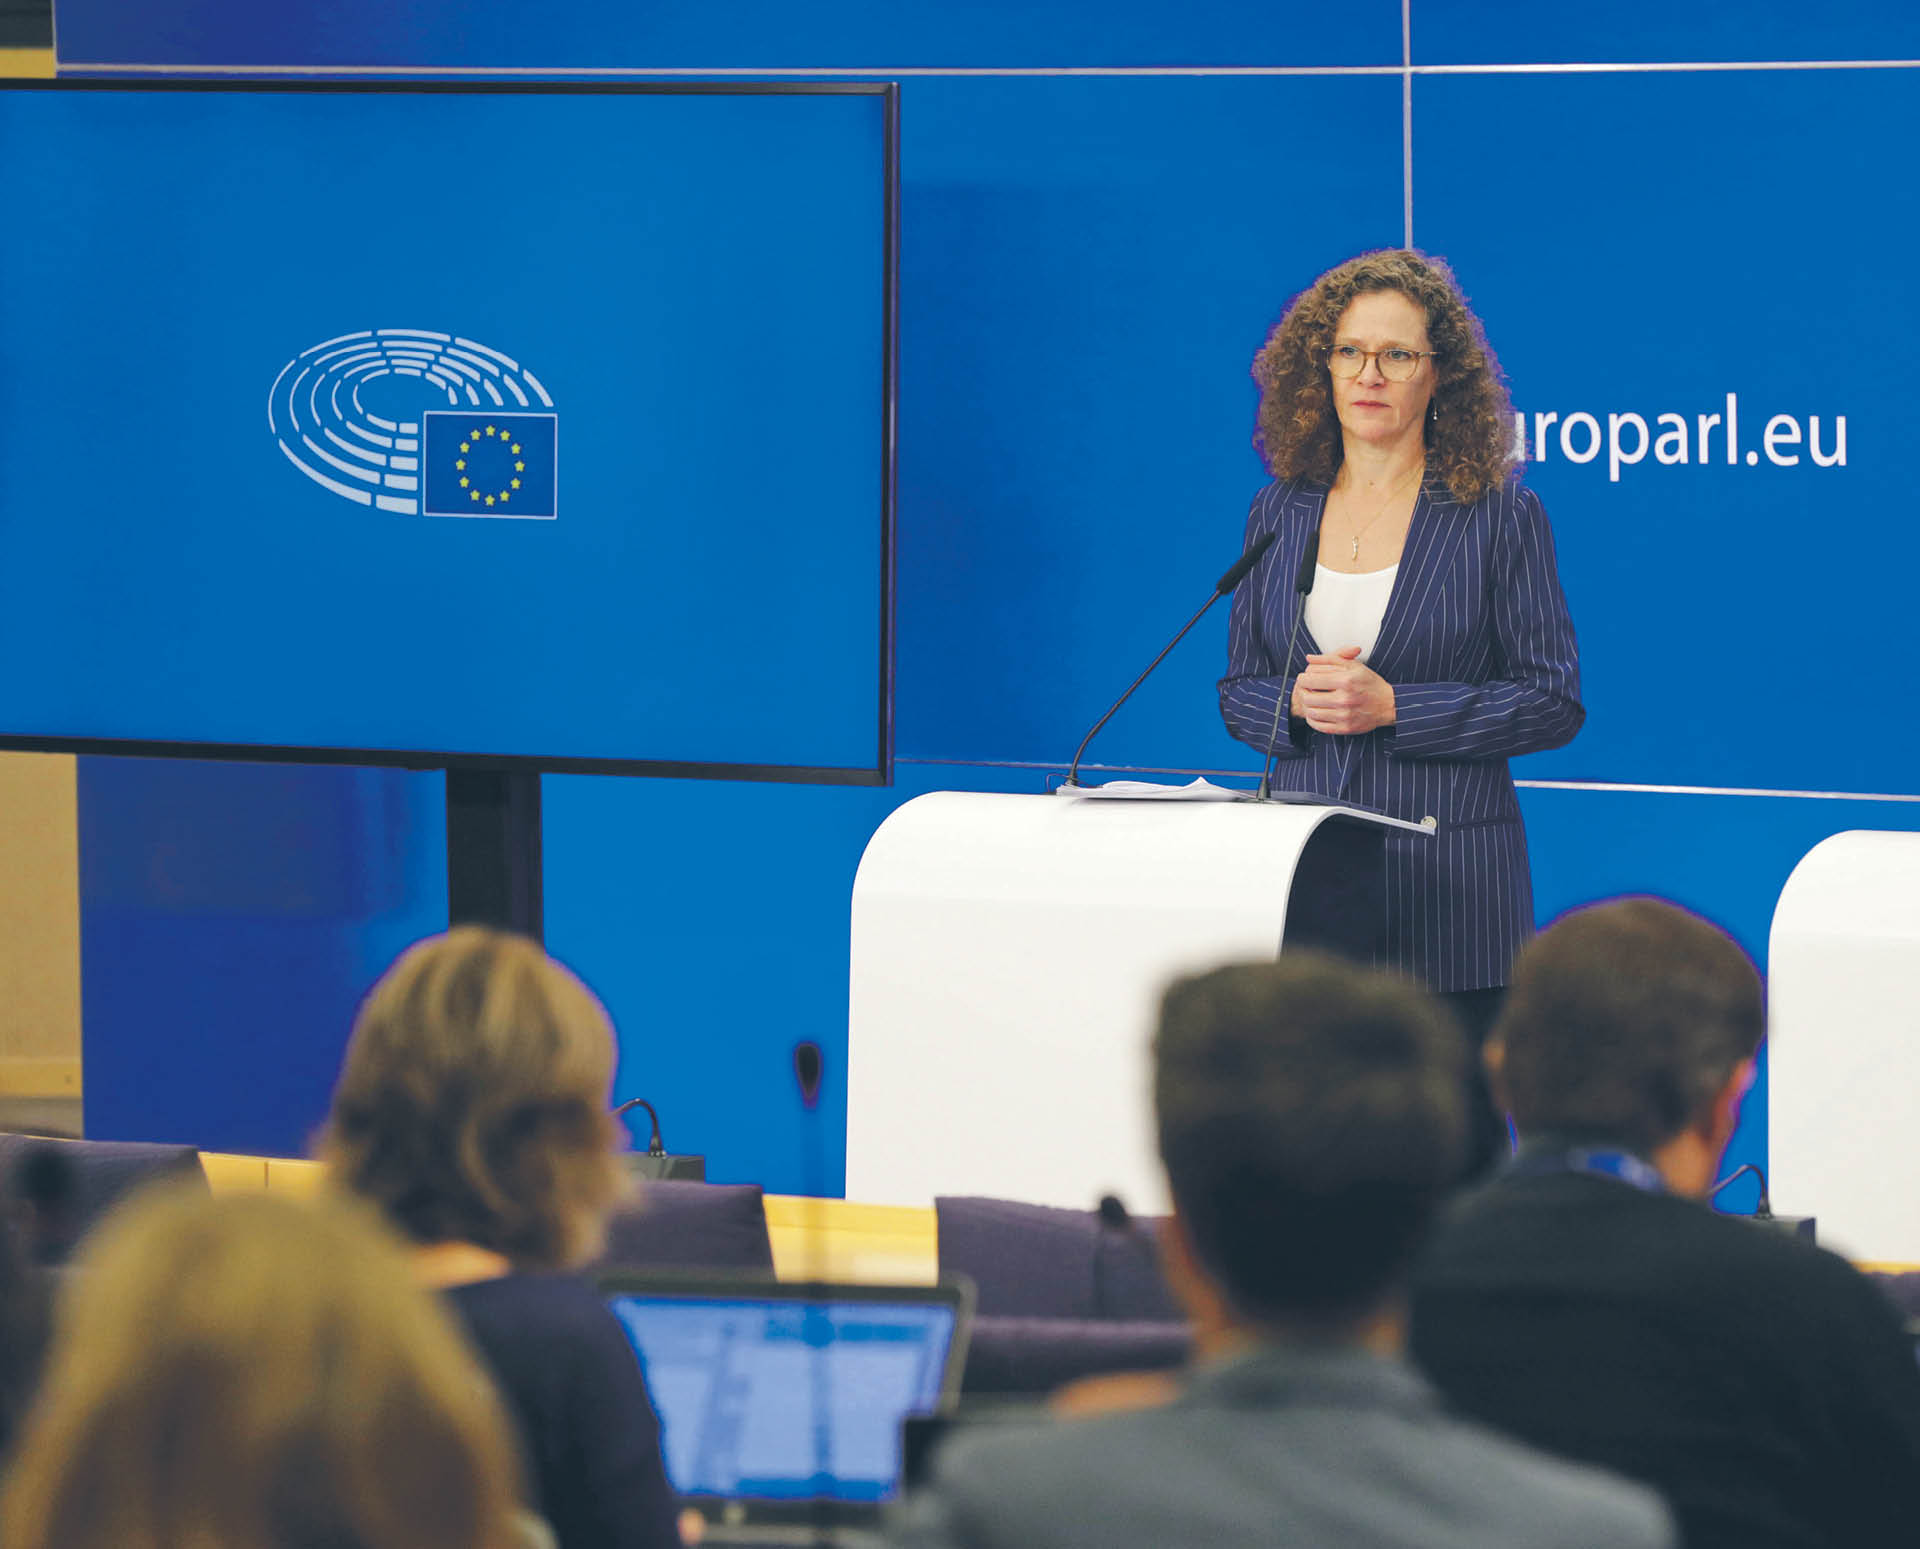 Holenderska europosłanka Sophie in’t Veld, członkini komisji śledczej PE ds. inwigilacji